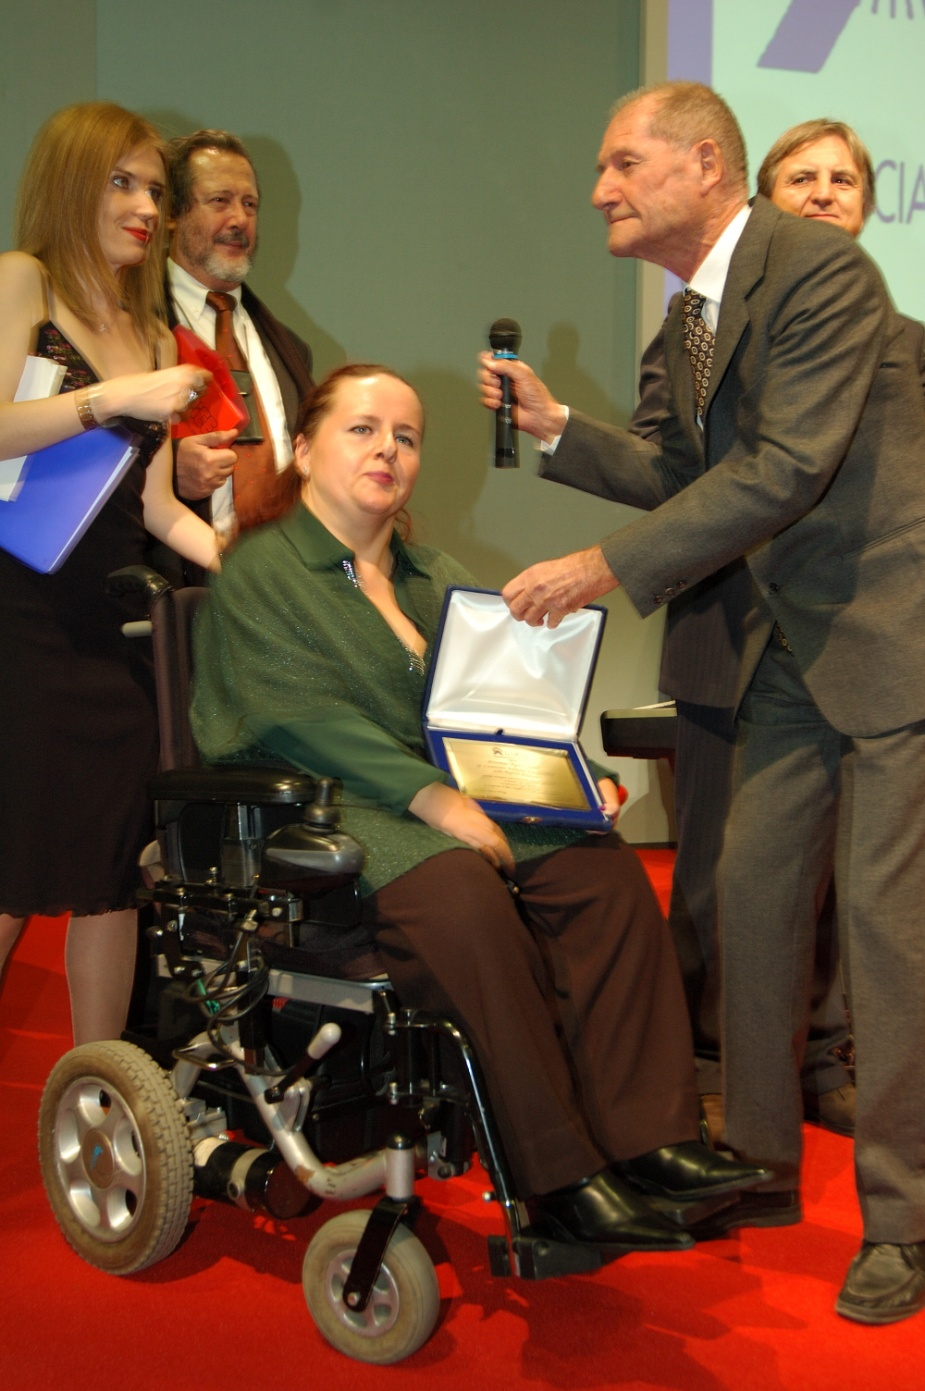 LA CONSEGNA DEL PREMIO APICE 2009 Il neurologo Enrico Morgando consegna il premio a Silvia Bruno